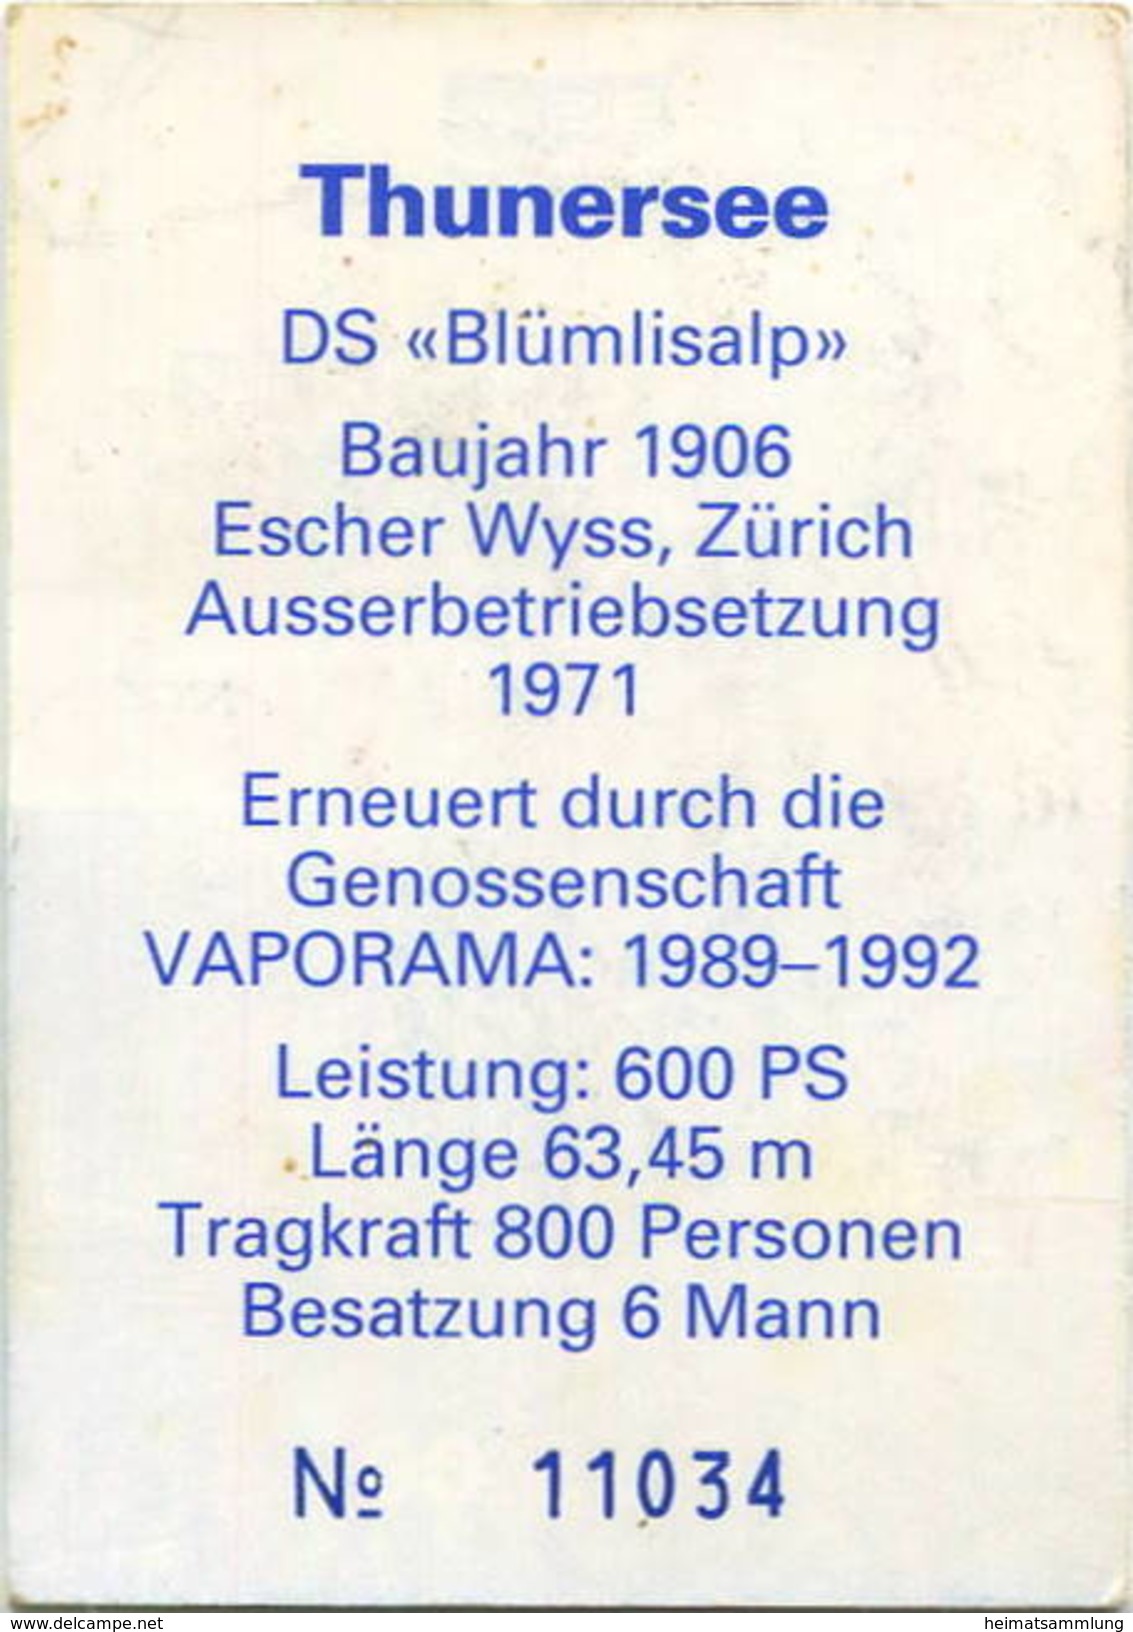 Schweiz - BLS - Thunersee - DS Blümlisalp - Dampfzuschlag - Europa